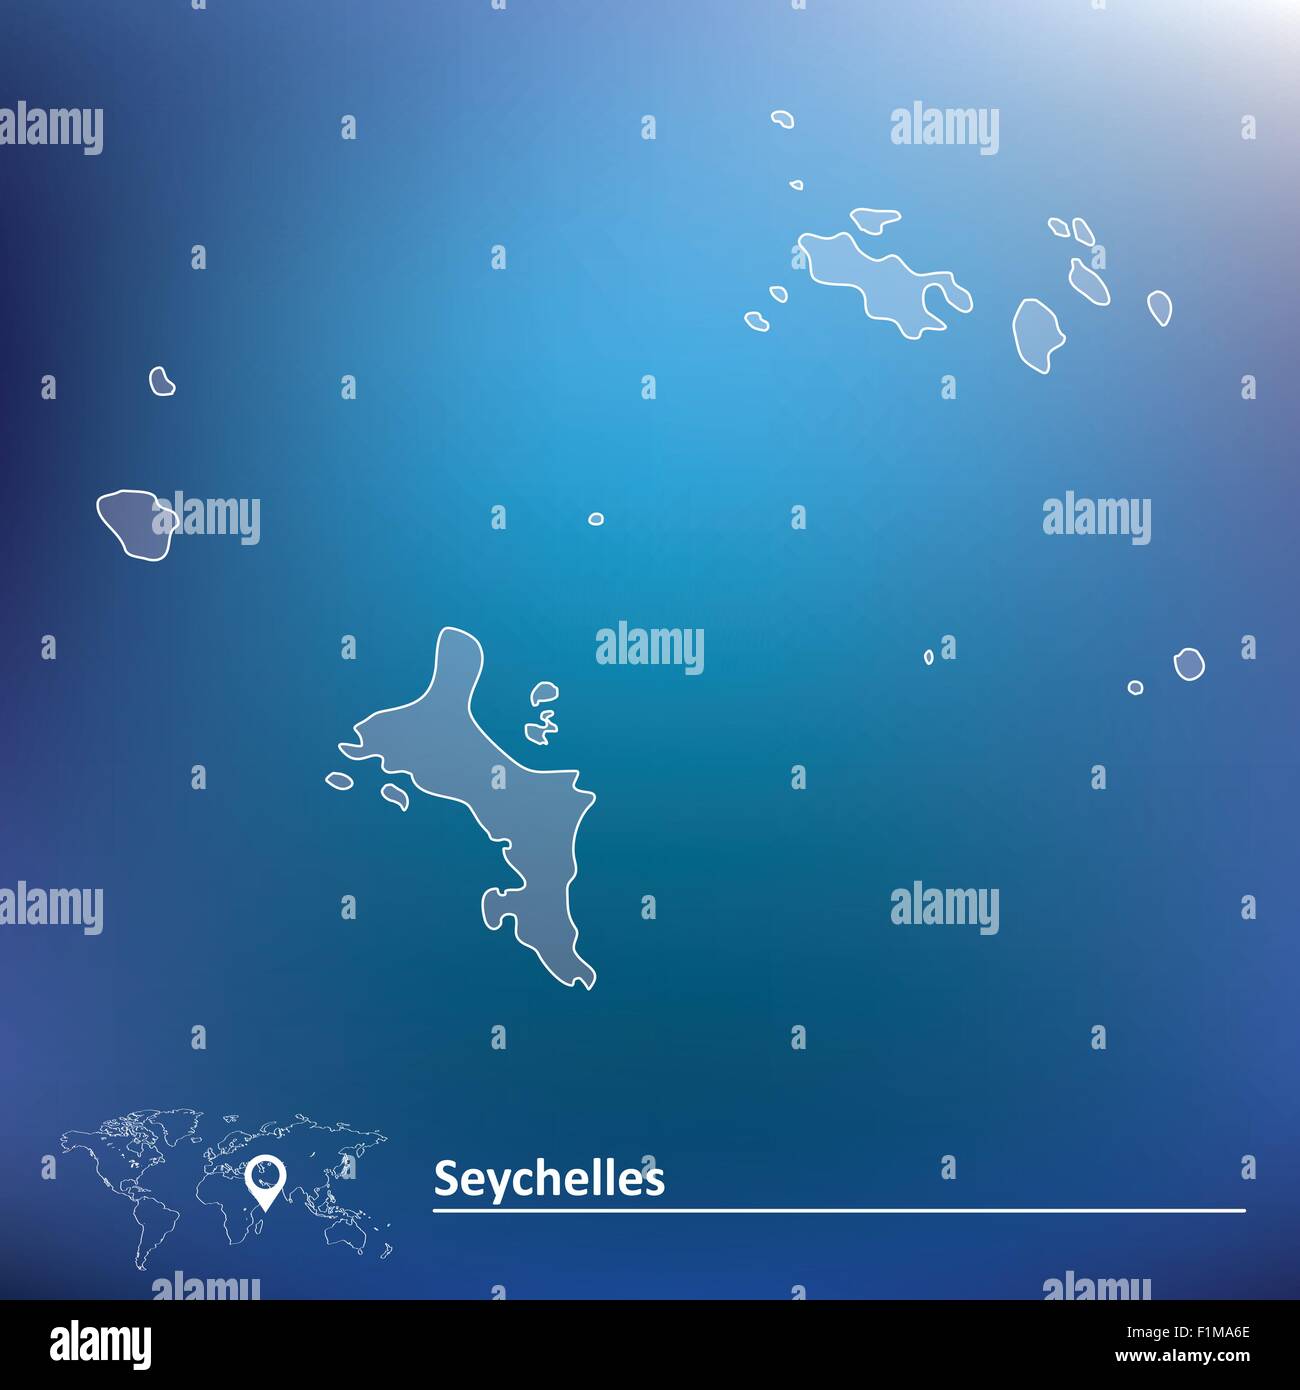 Karte der Seychellen - Vektor-illustration Stock Vektor